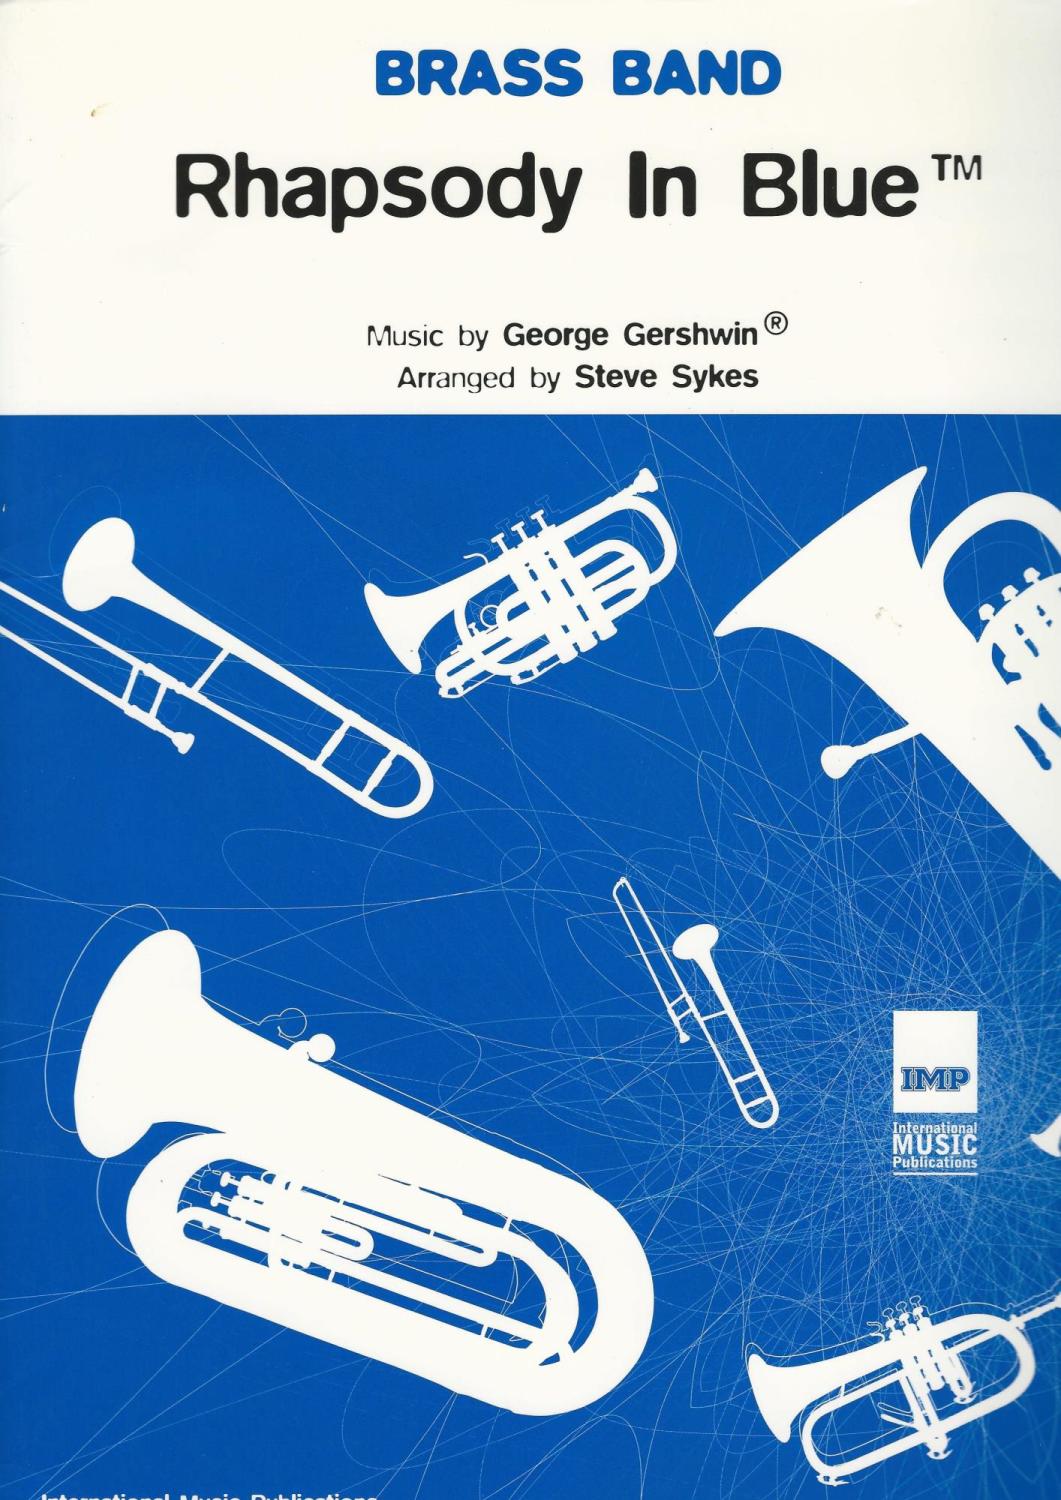 Rhapsody in Blue for Brass Band - George Gerswin, arr. Steve Sykes